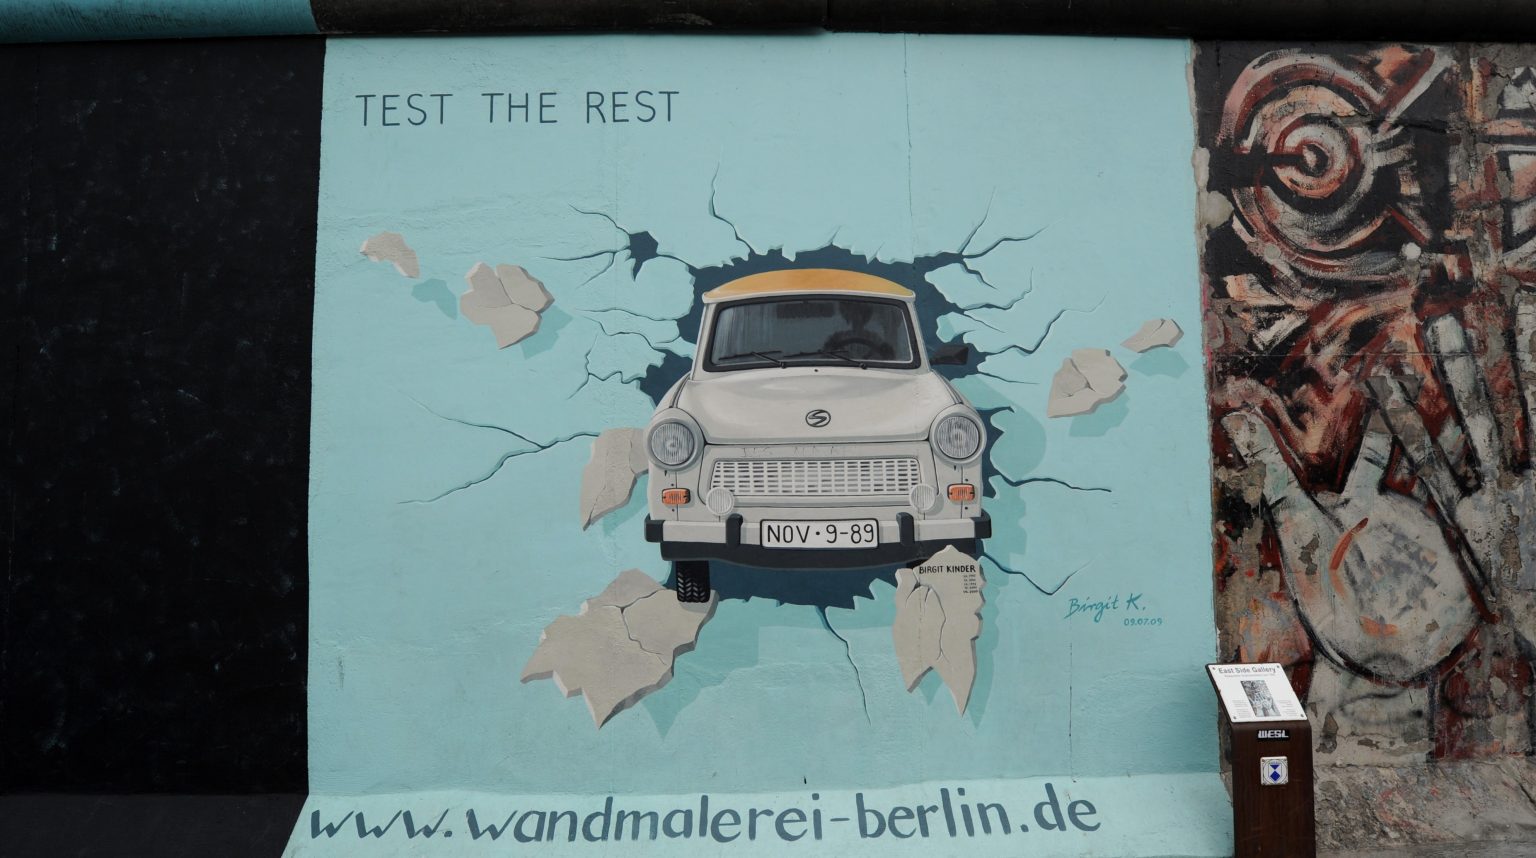 East Side Gallery Berlin Wall